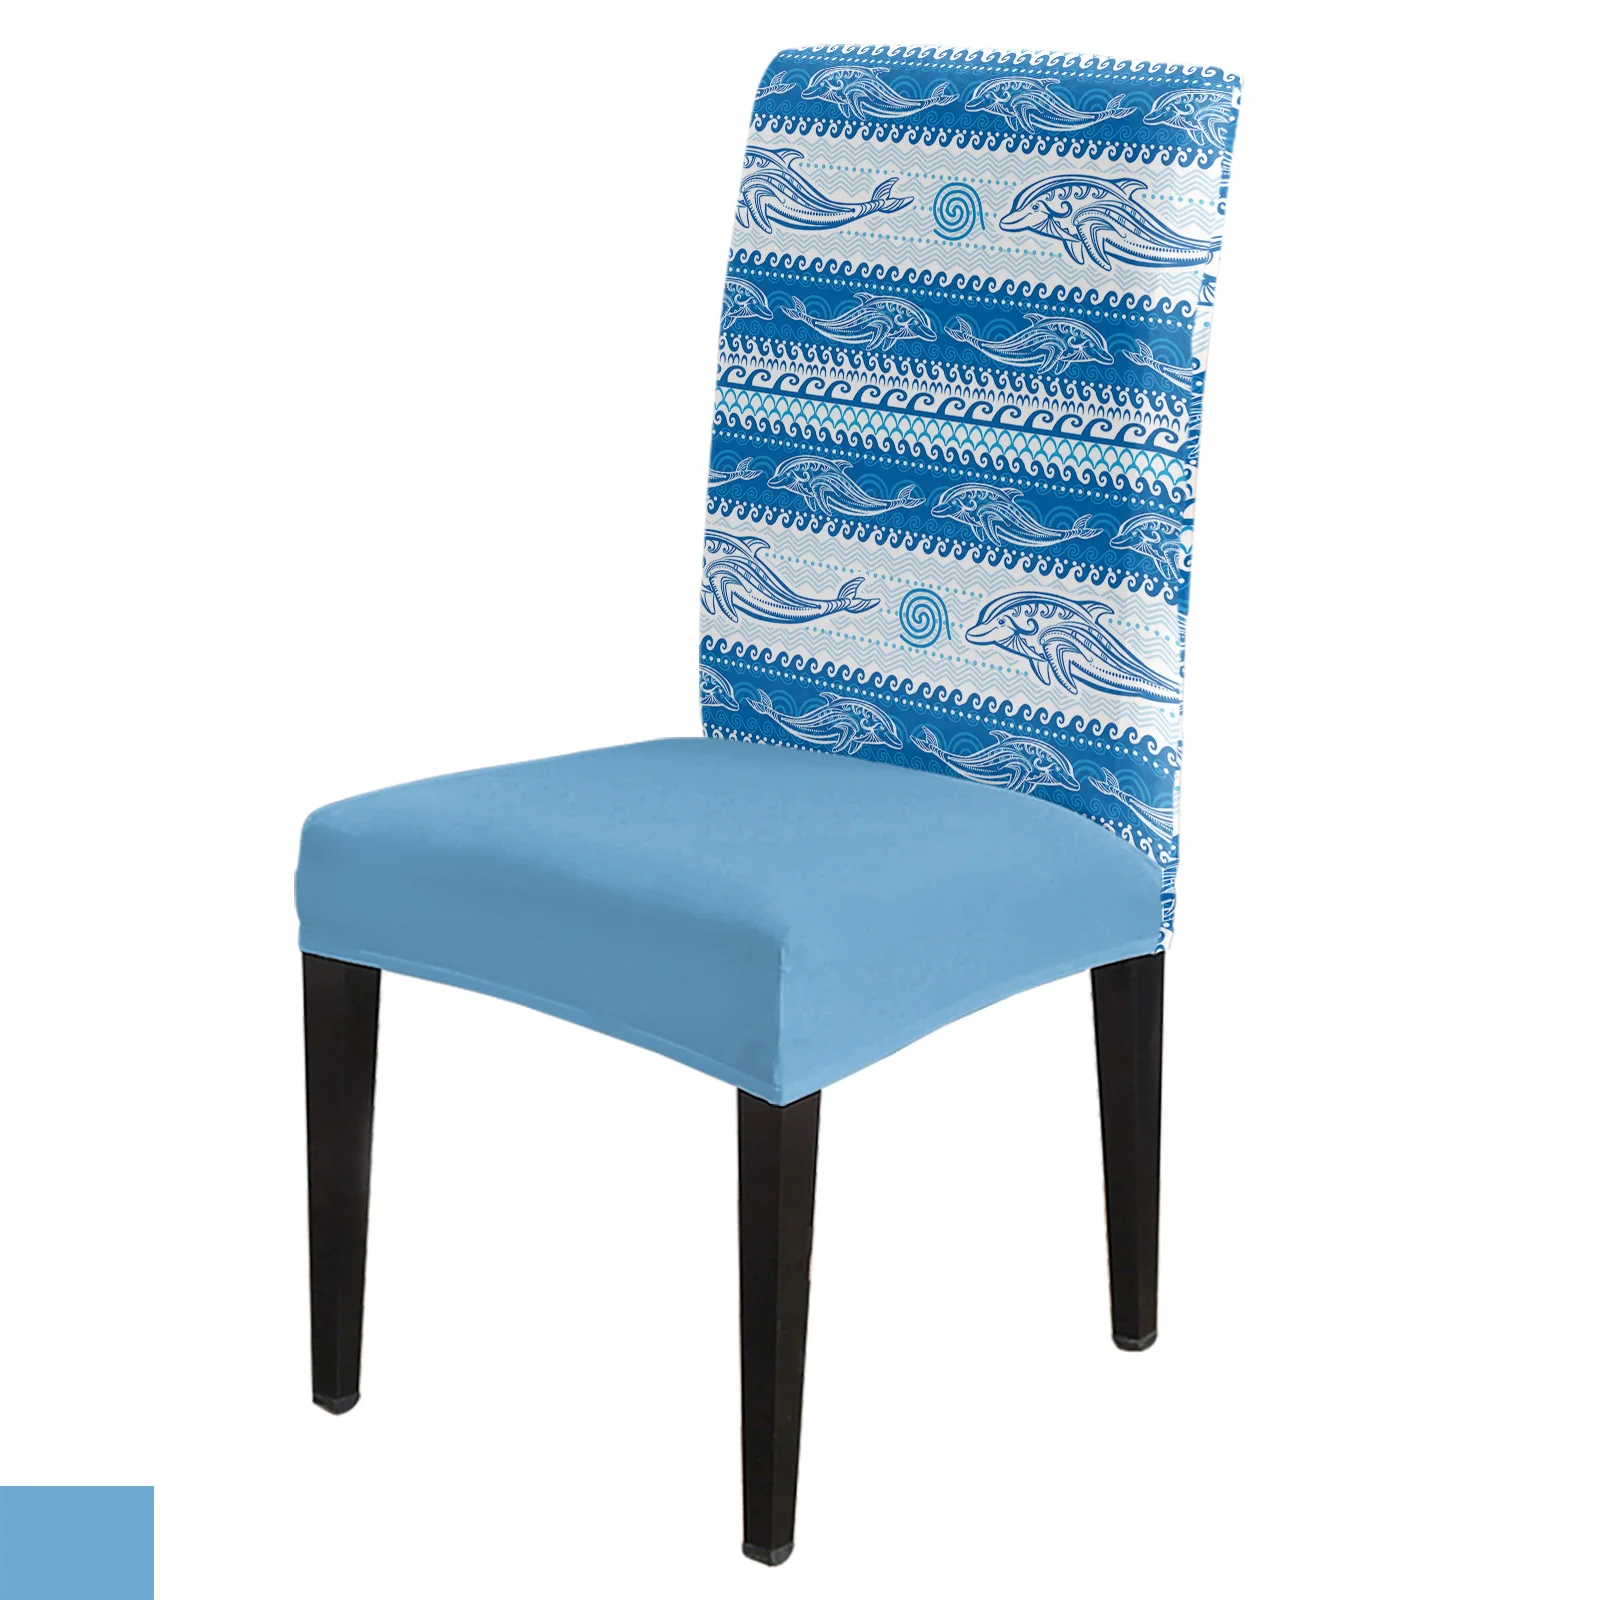 

Чехол на стул с изображением дельфина и волн, эластичное покрытие для кухонного стула, банкета, отеля, дома